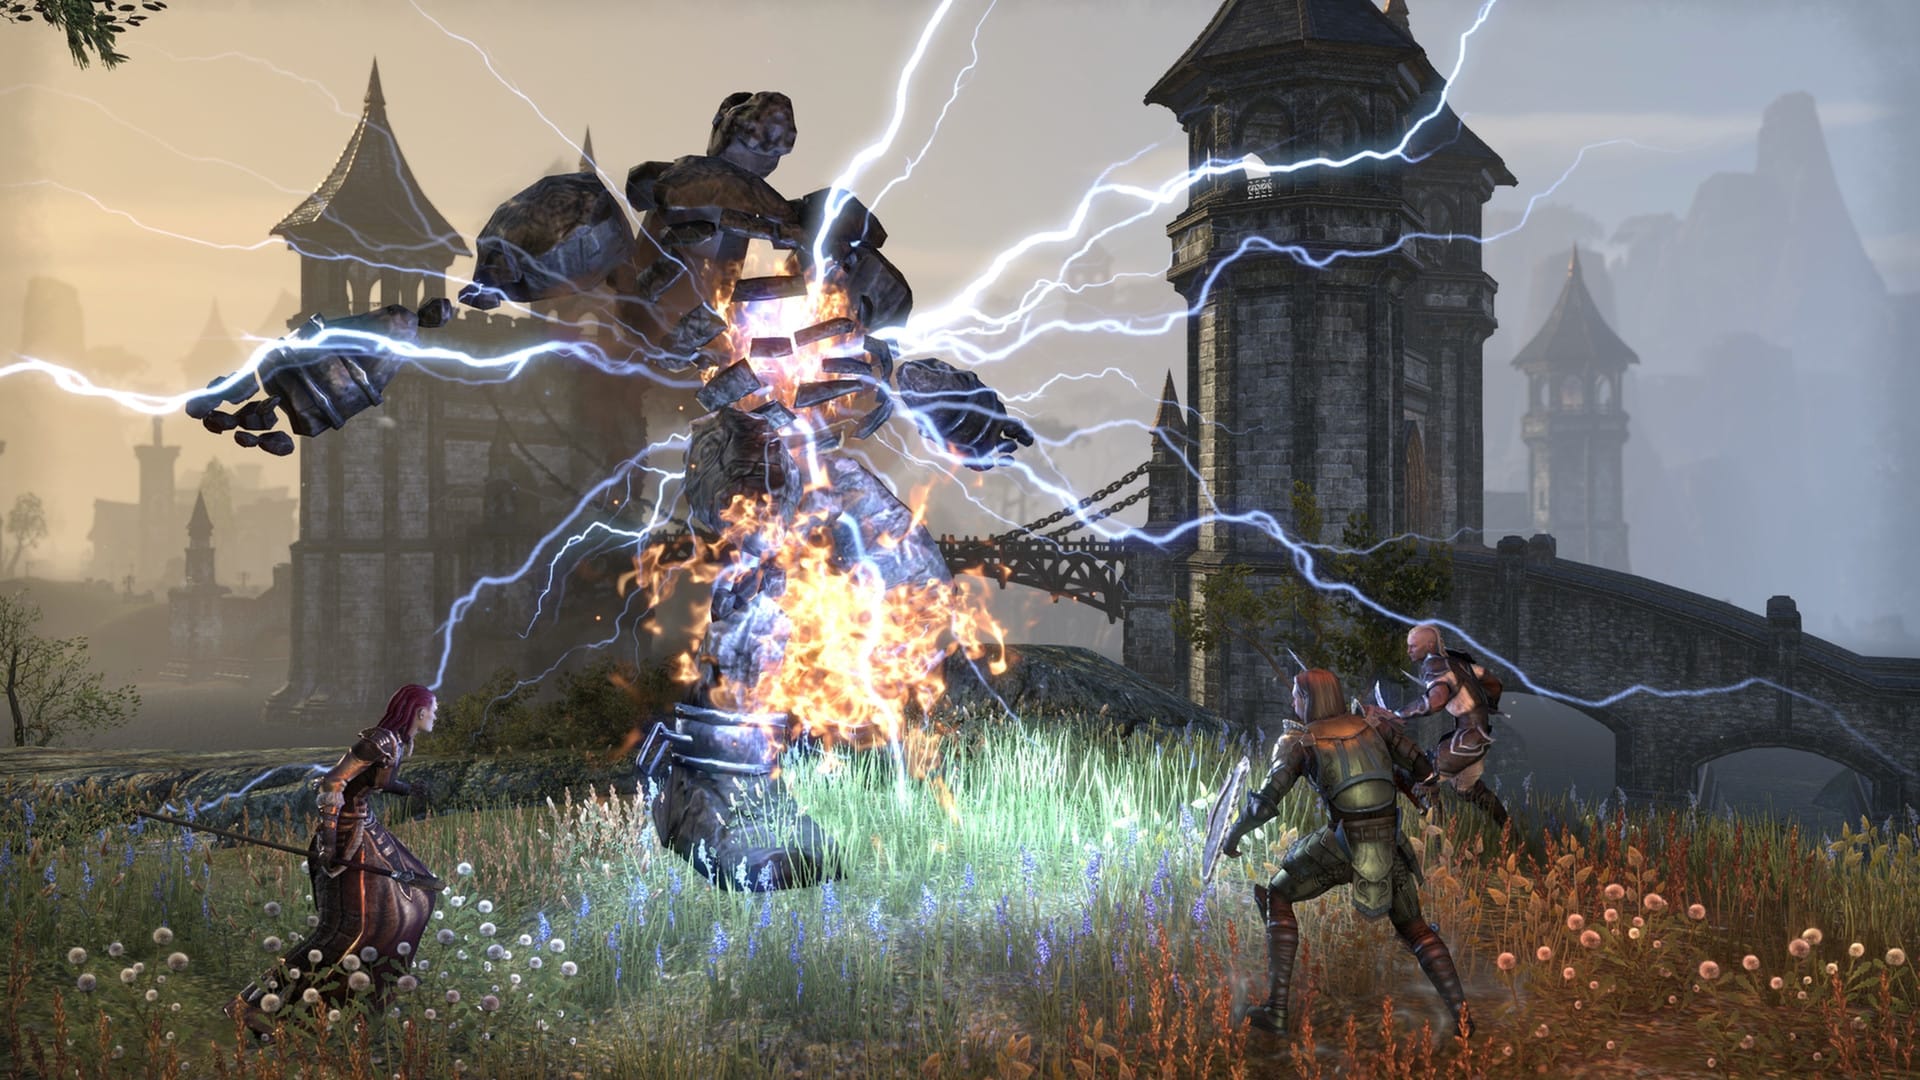 최고의 MMORPG 게임 : 장로 스크롤 온라인. 이미지는 전기가 나오는 큰 석재 생물에 대항하는 세 캐릭터의 파티를 보여줍니다